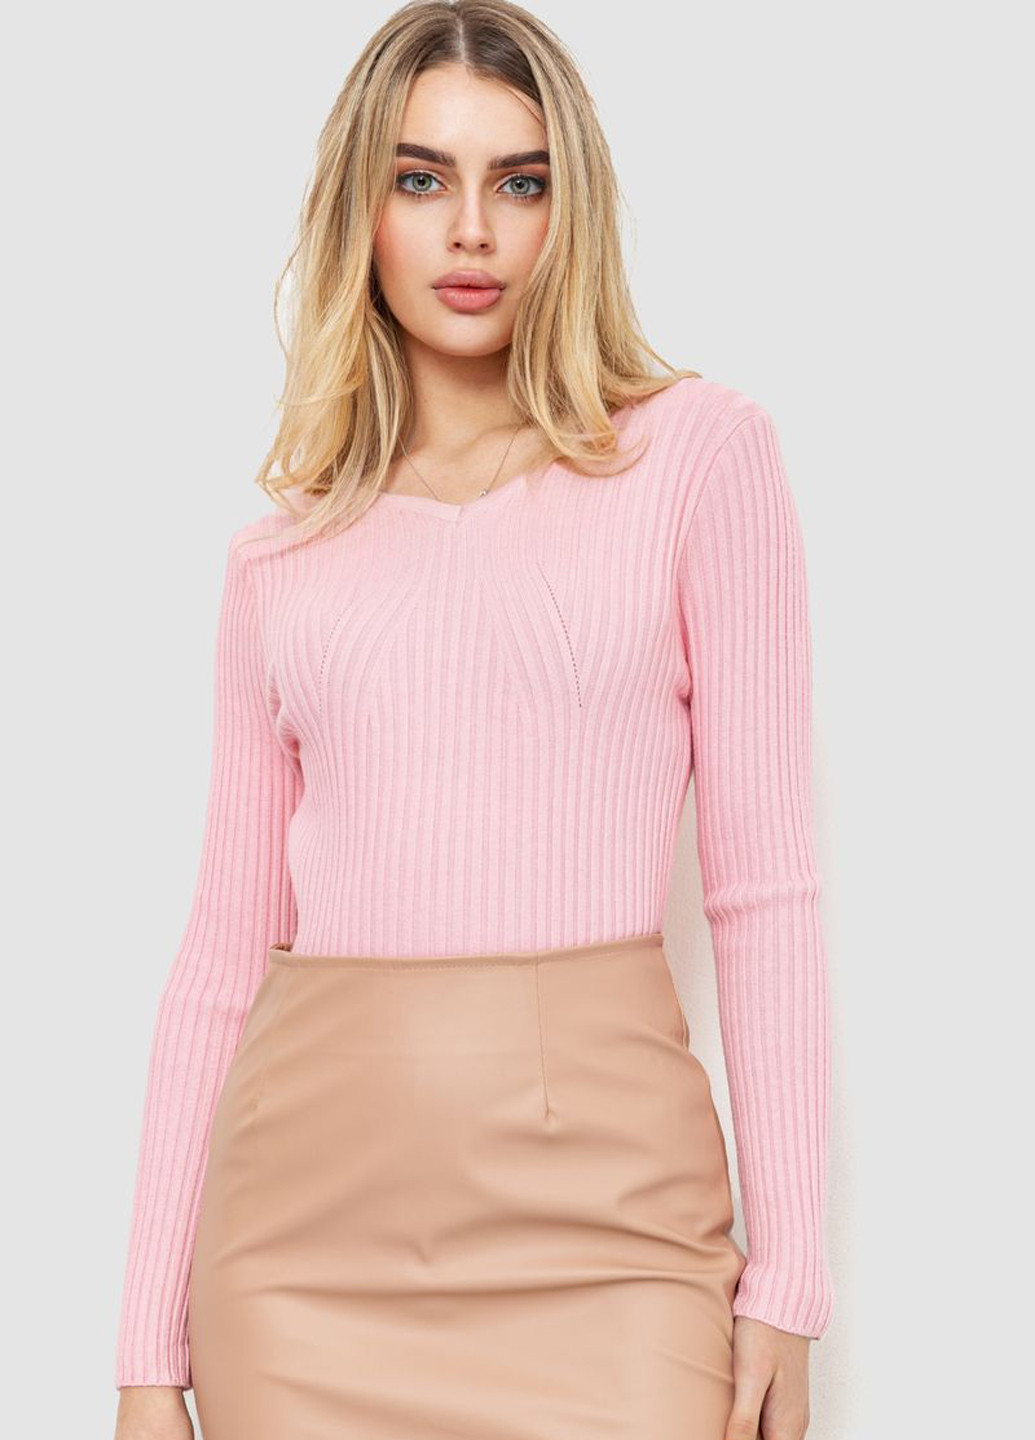 Светло-розовый демисезонный пуловер пуловер Ager